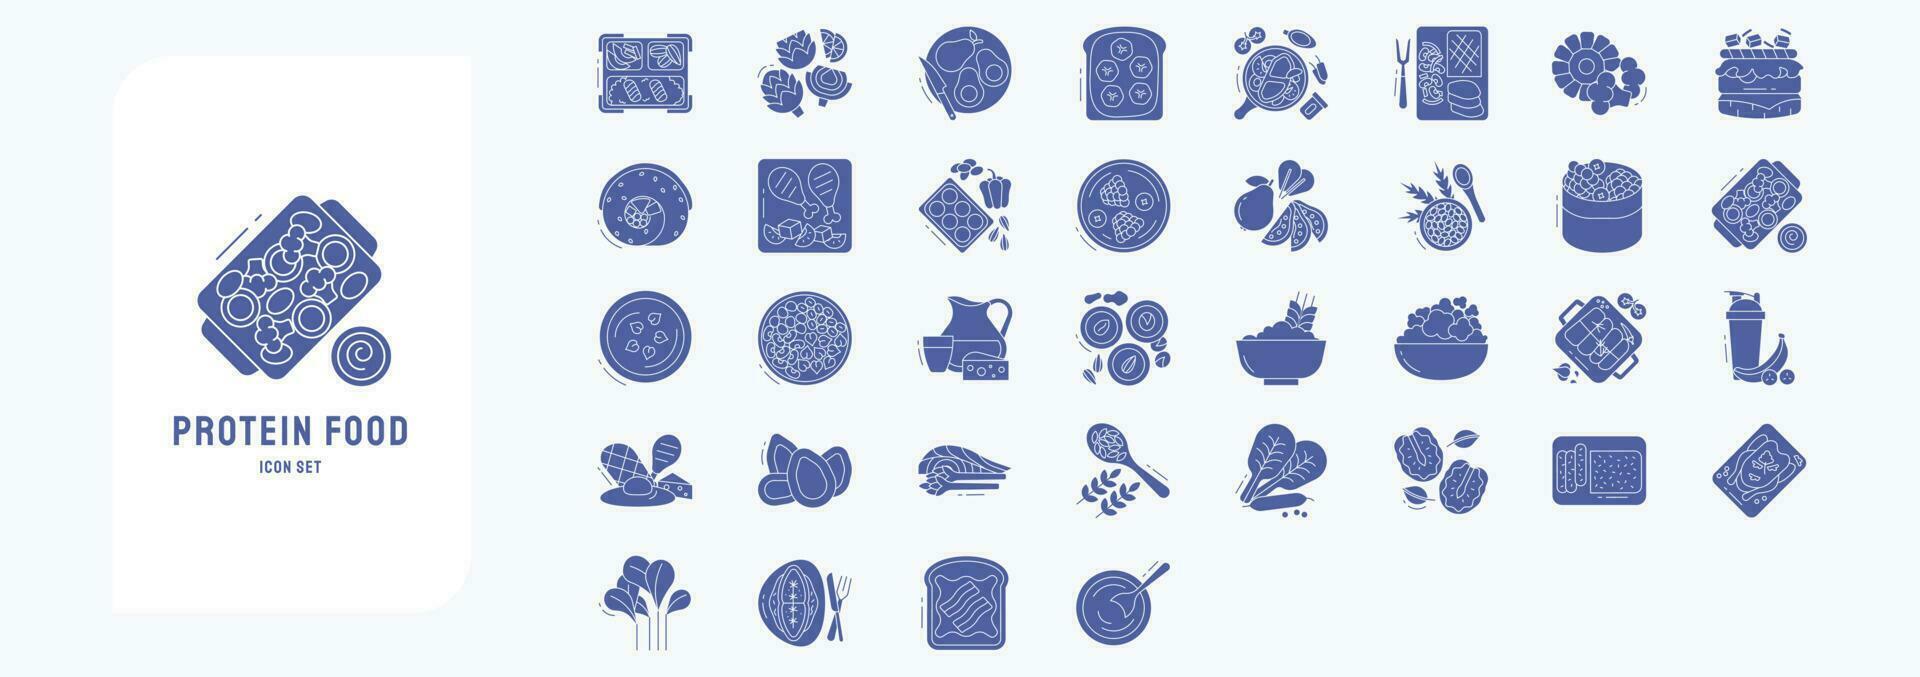 verzameling van pictogrammen verwant naar eiwit voedsel , inclusief pictogrammen Leuk vinden avocado, geroosterd brood, fruit en meer vector